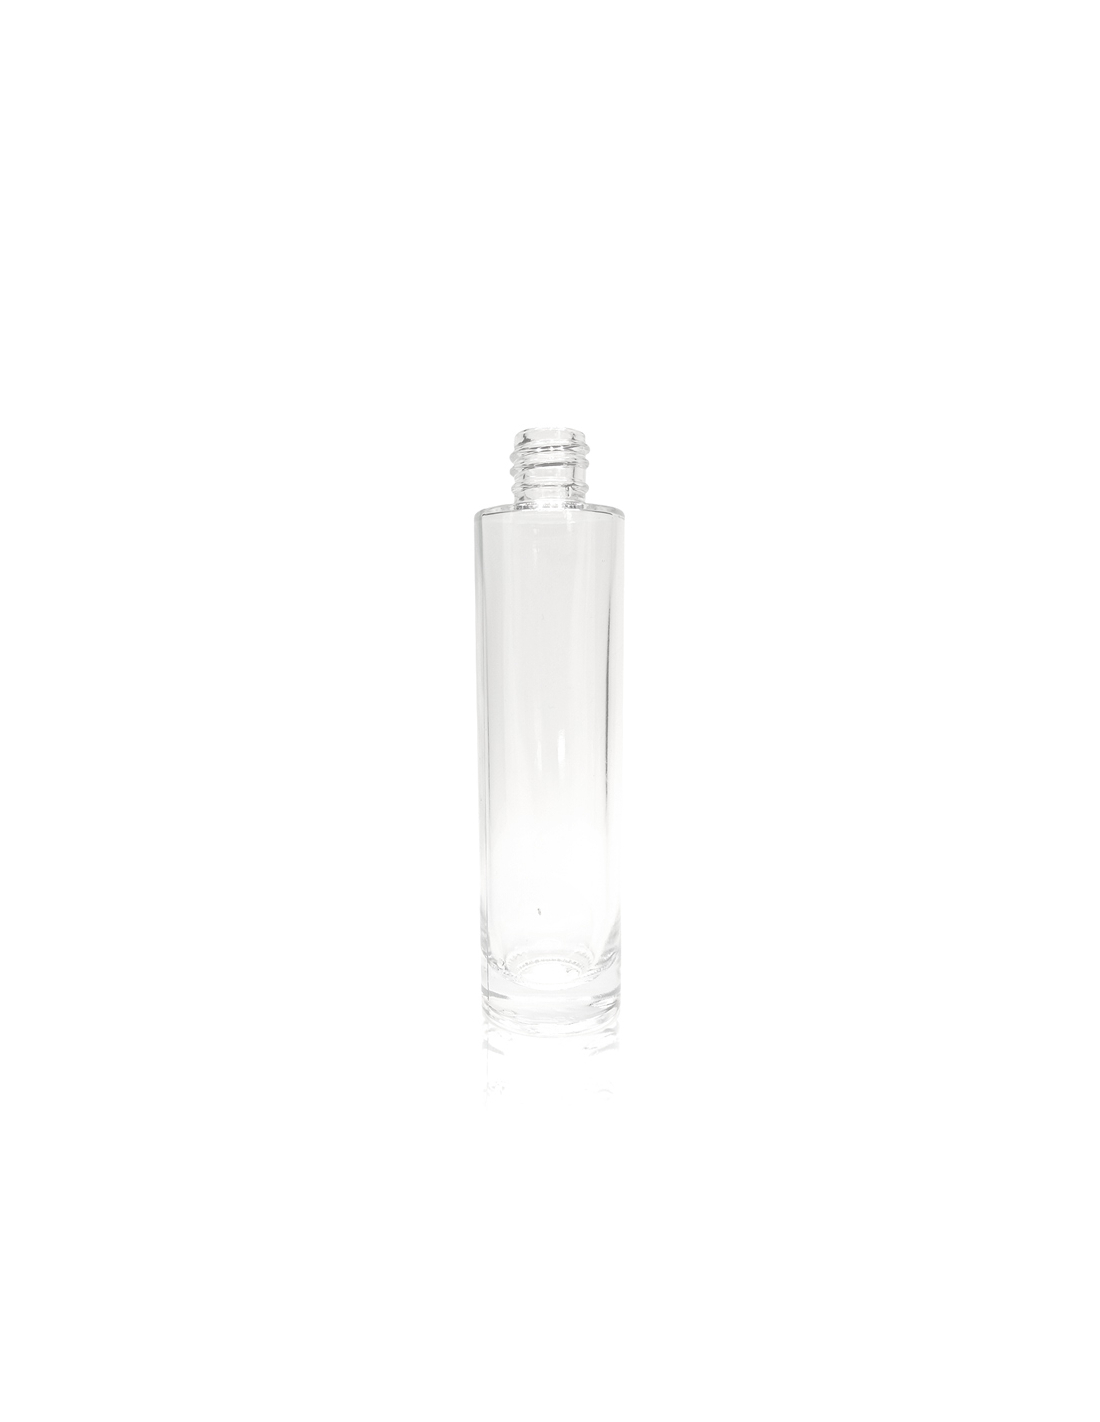 Parfümflasche Retro Pera 15ml - Kleine Parfümflaschen-Parfumherstellen